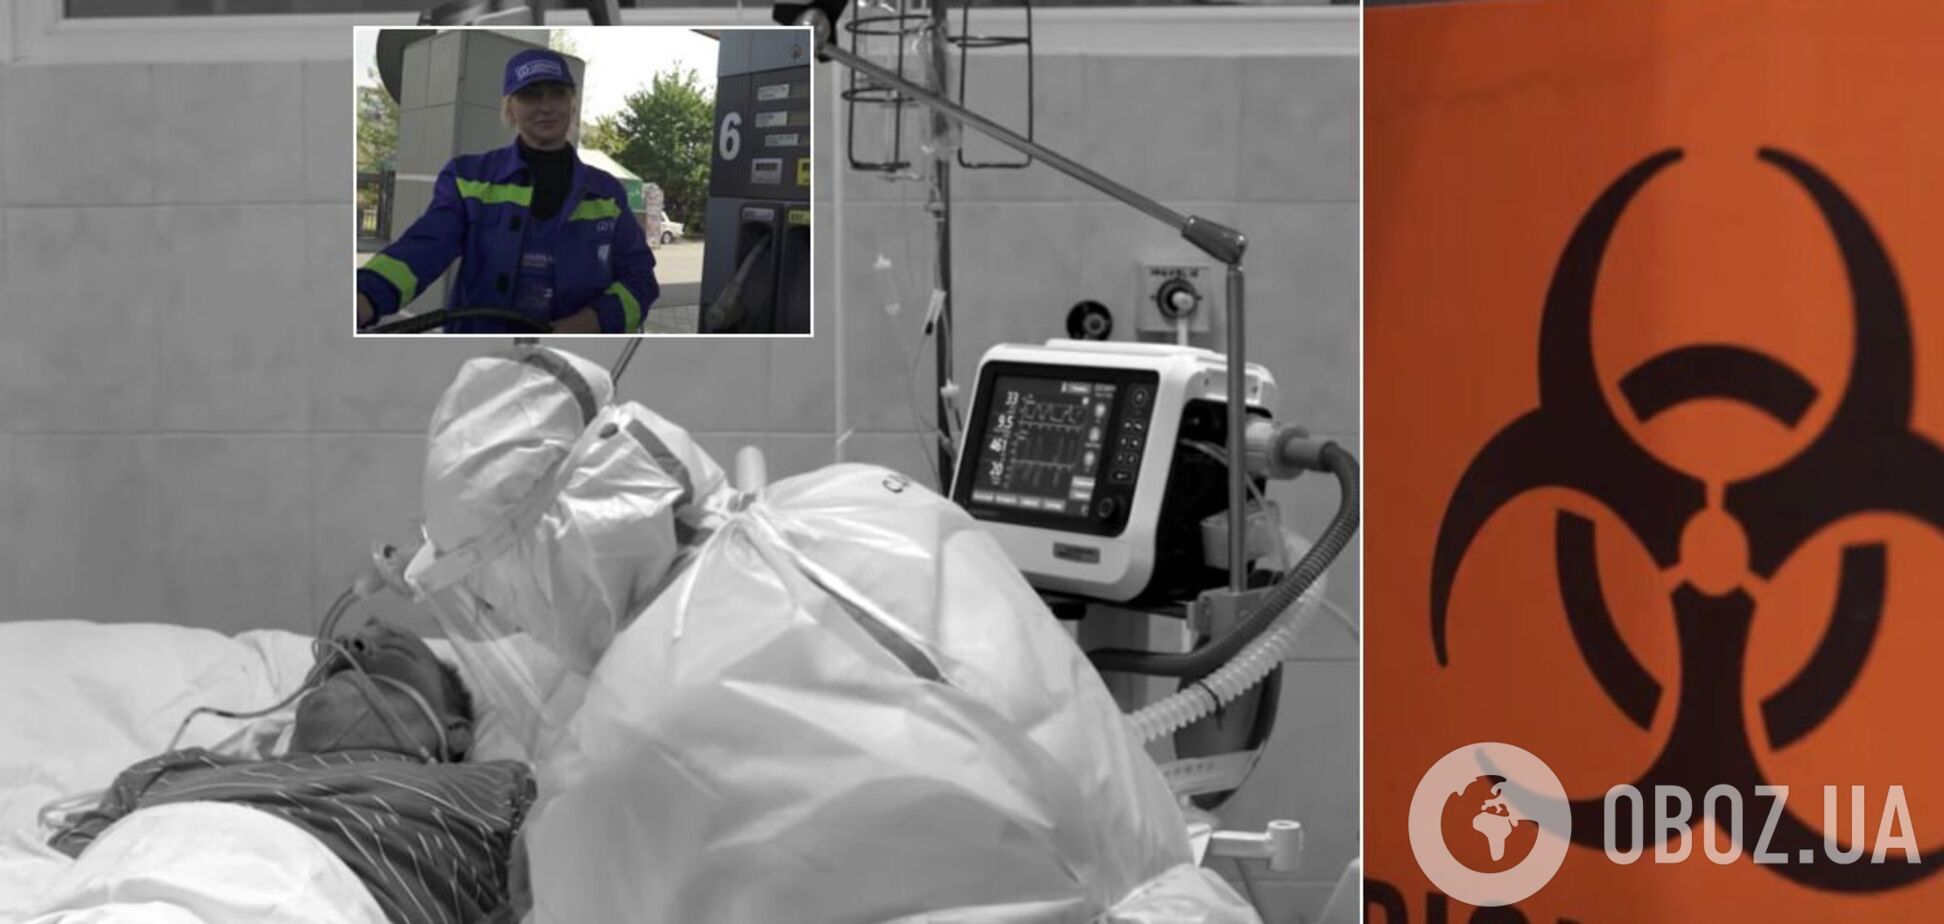 Медсестра устроилась на заправку, врач умер без лекарств: правдивые истории о COVID-19 в фильме Бно-Айрияна